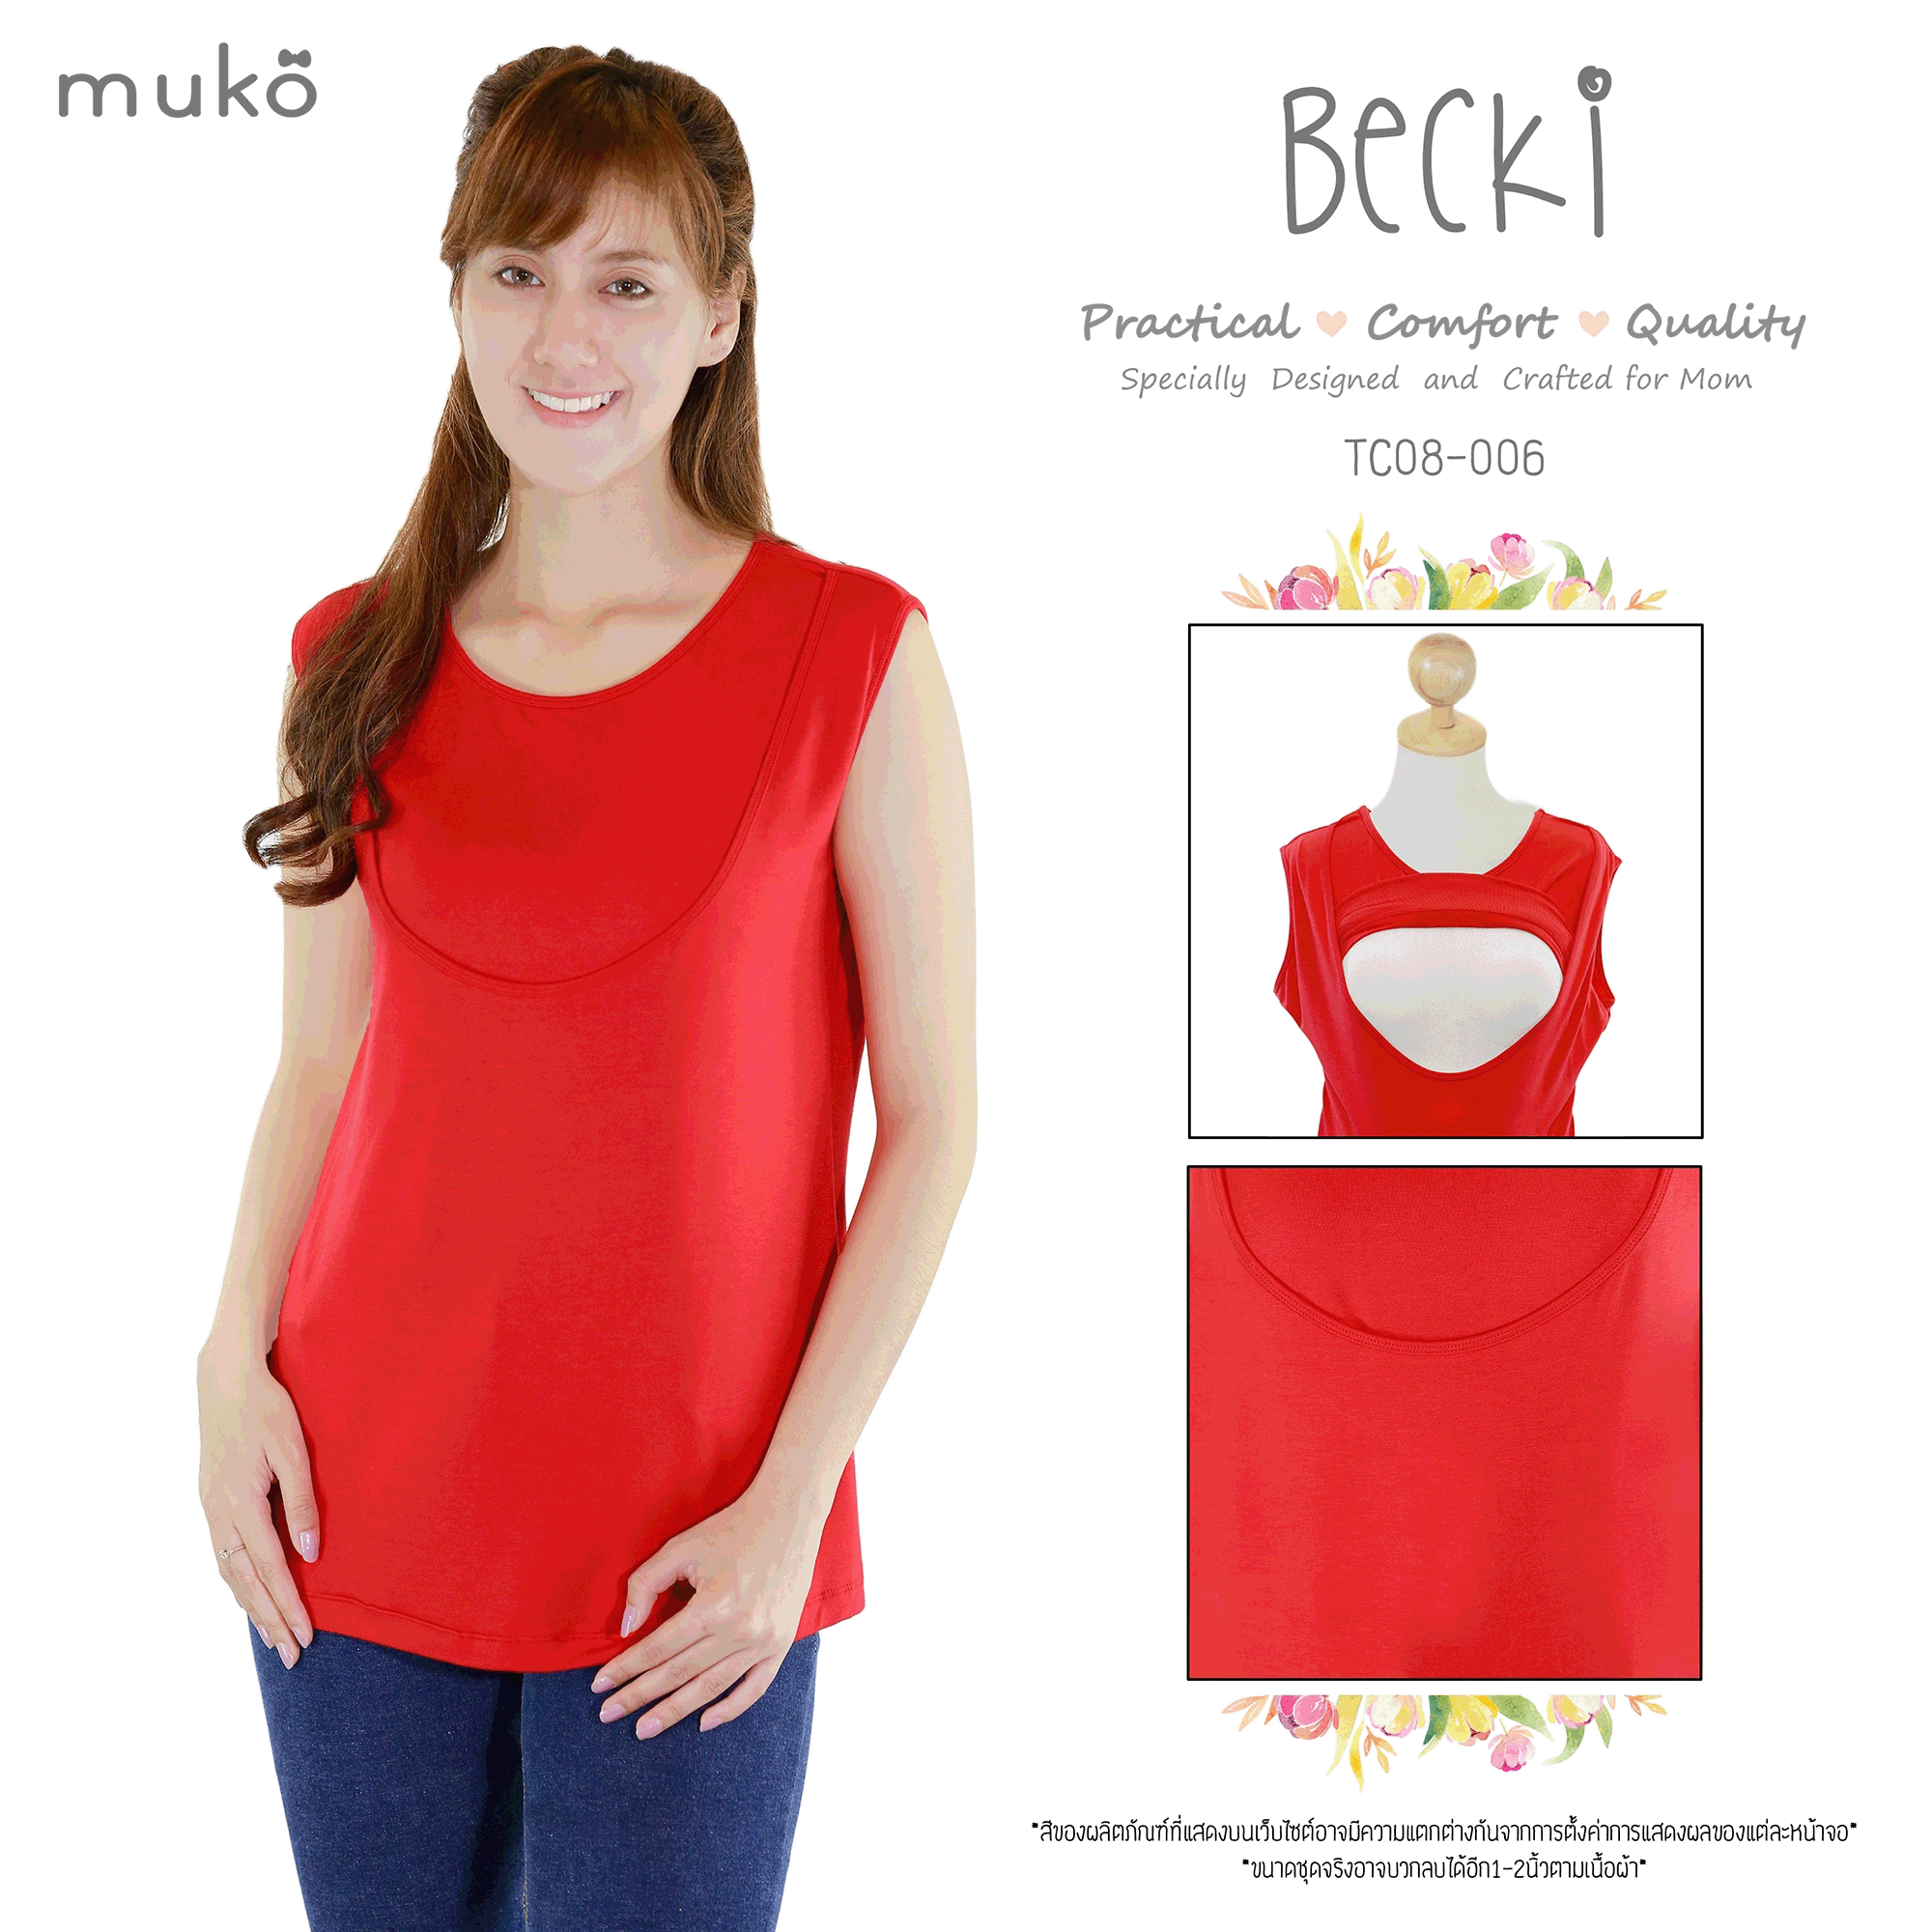 Muko Becki เสื้อเปิดให้นม ชุดคลุมท้อง TC08-006M สีแดง